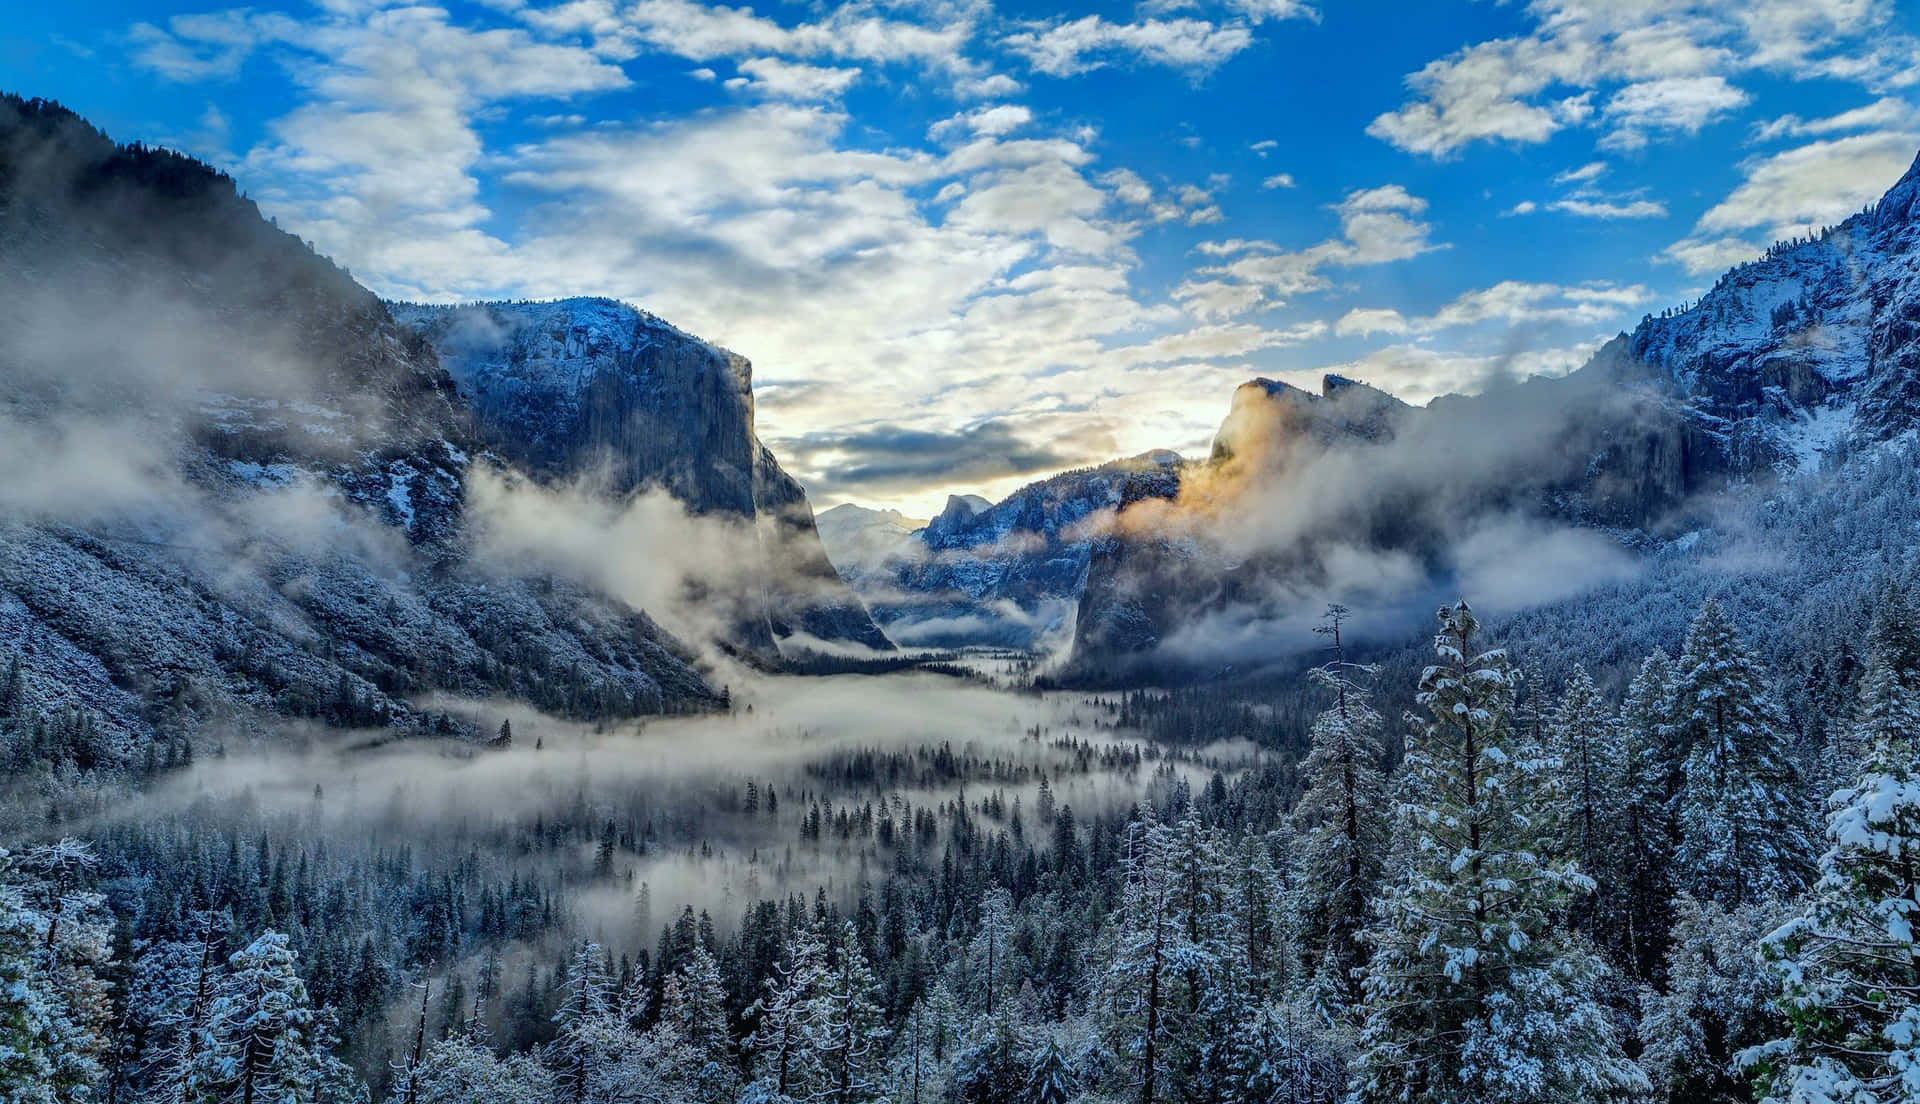 Montañascubiertas De Nieve Y Un Lago Prístino Ofrecen Vistas Impresionantes Del Invierno. Fondo de pantalla